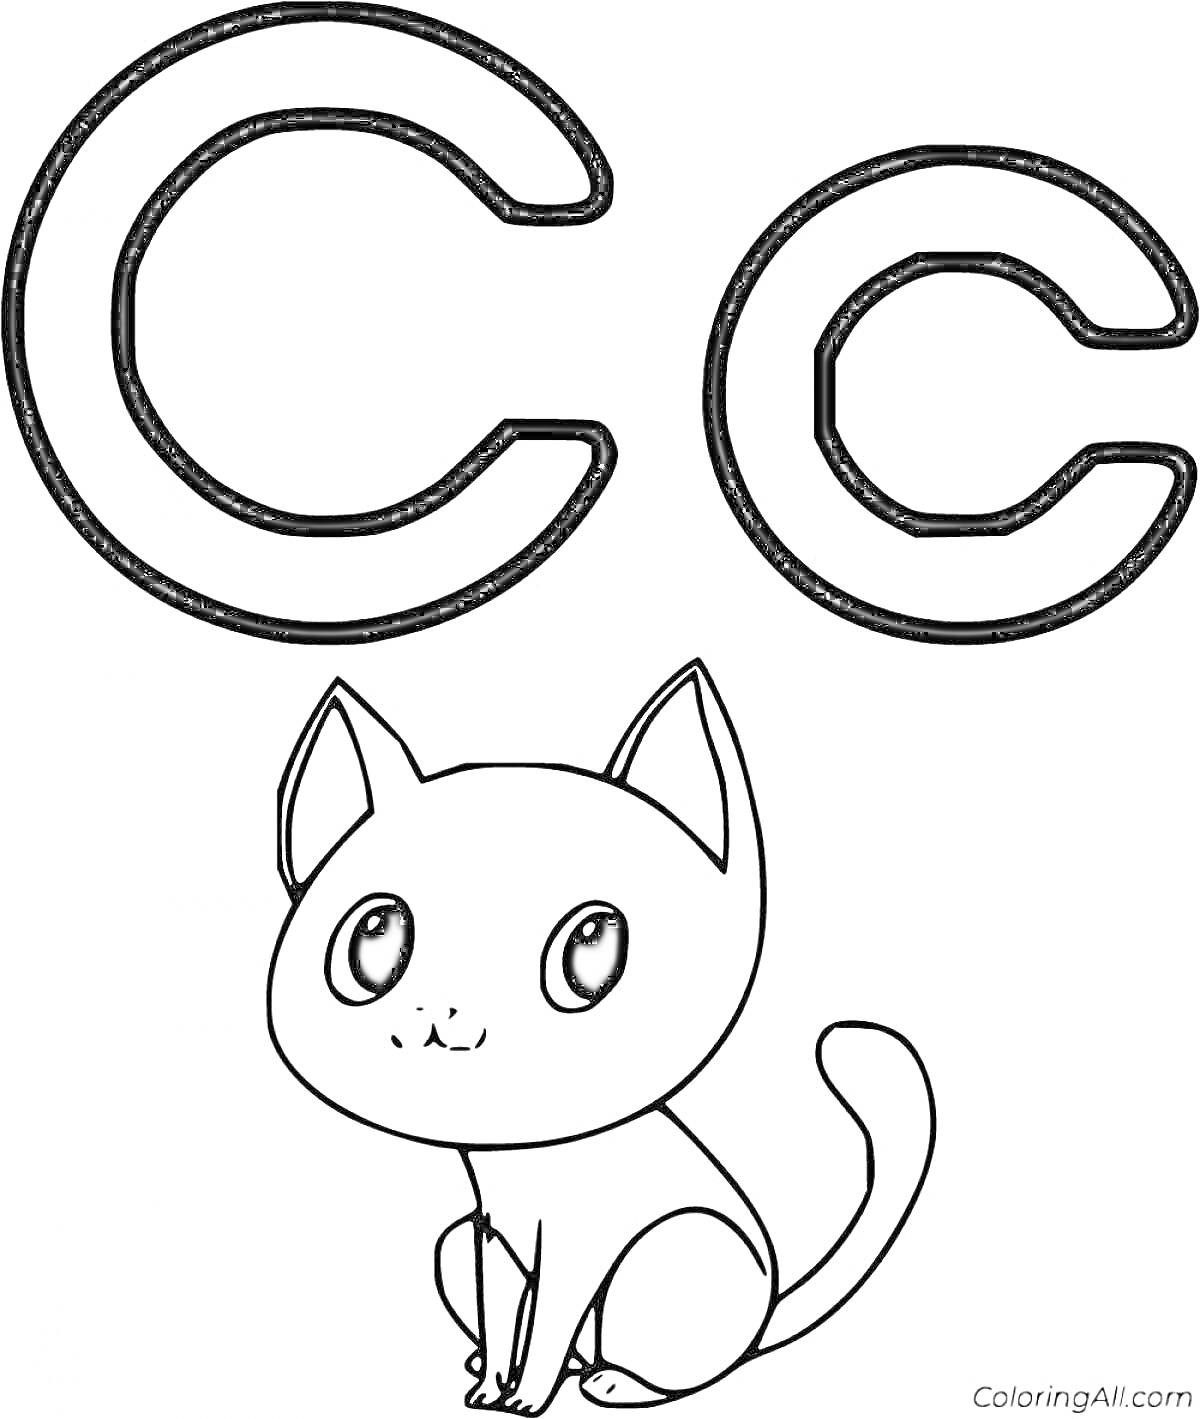 Раскраска Буква C с котенком